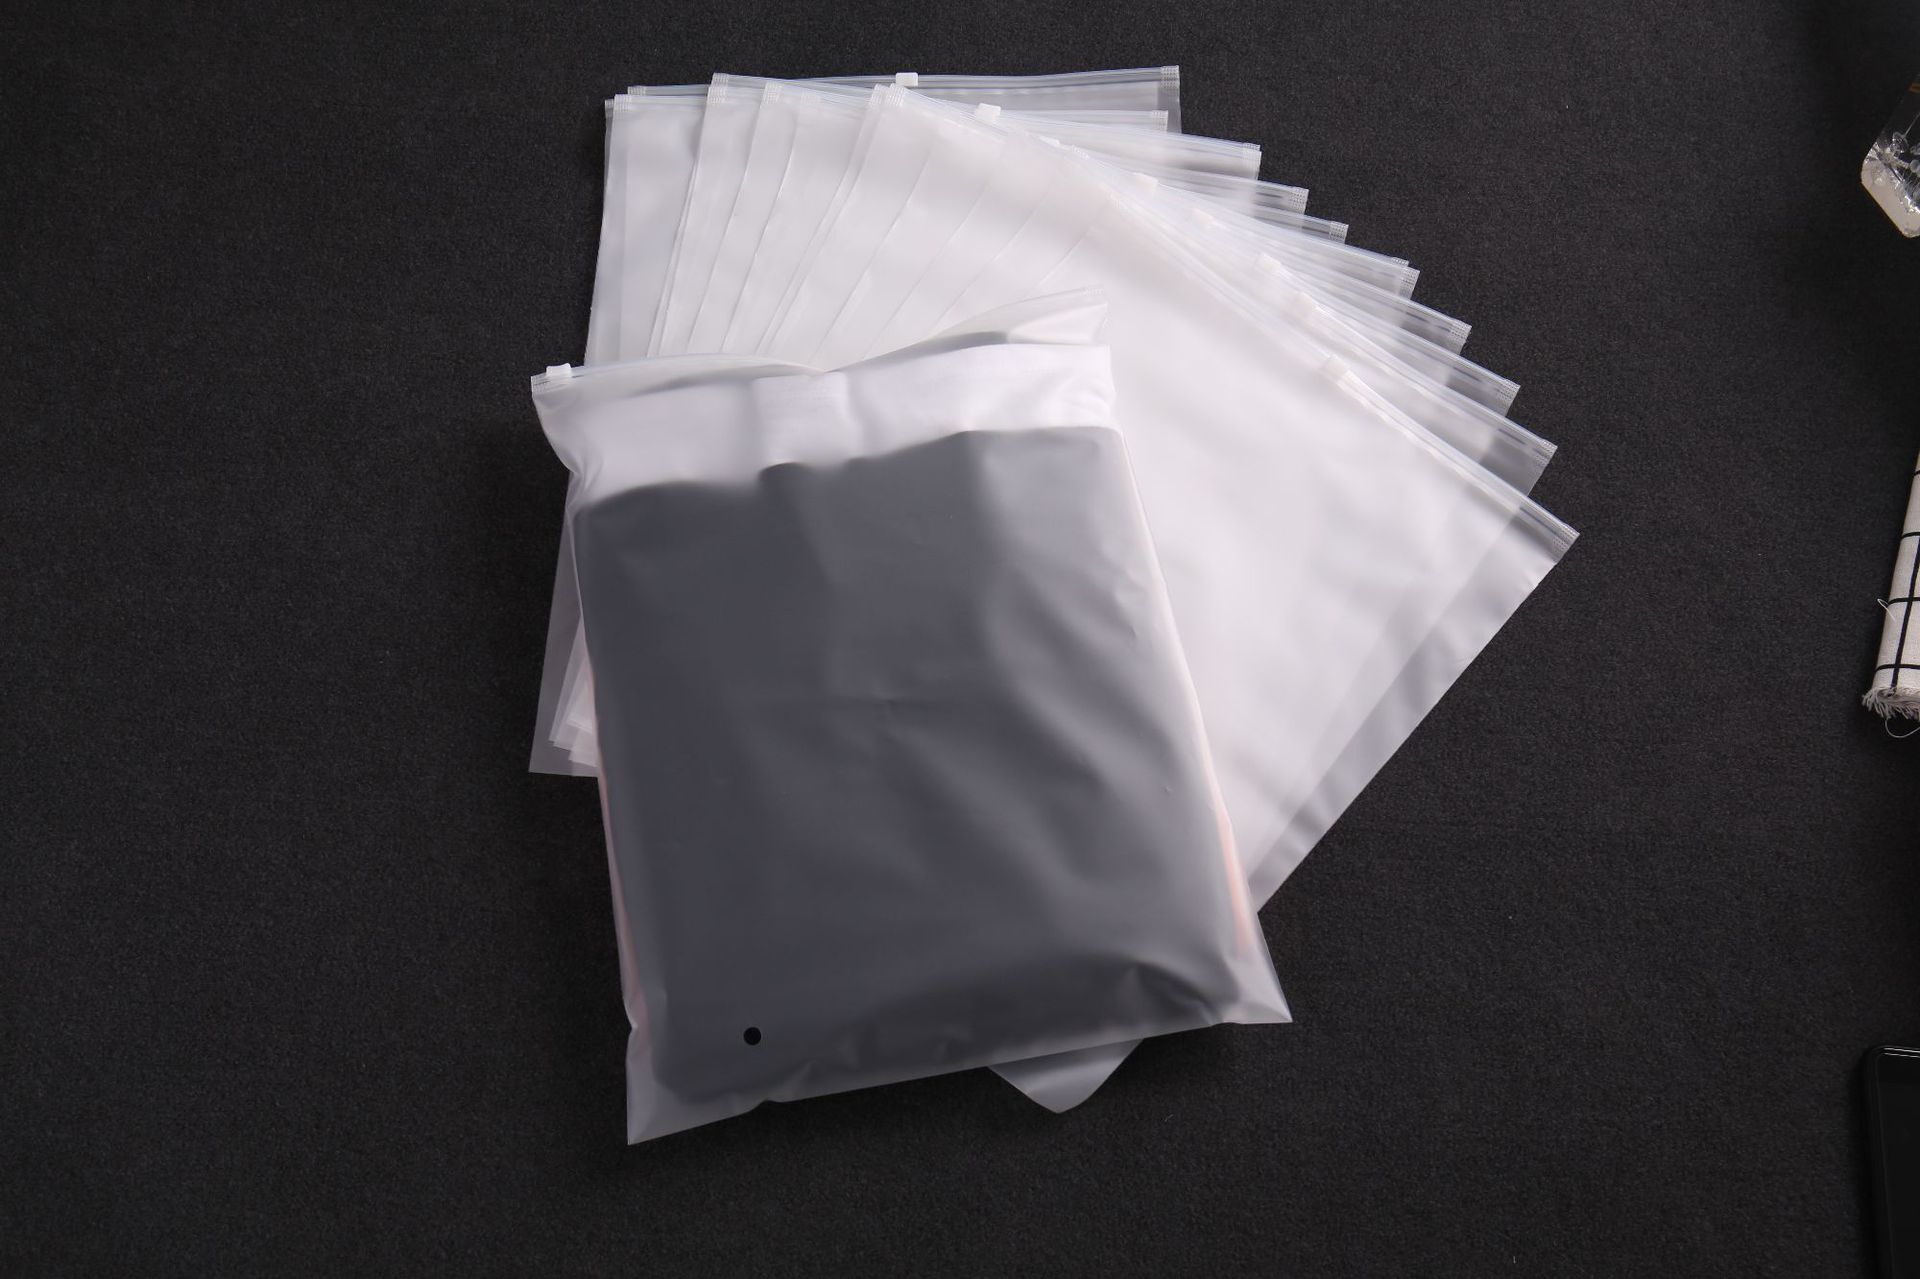 Custom frosted underwear packing slider zipper bag